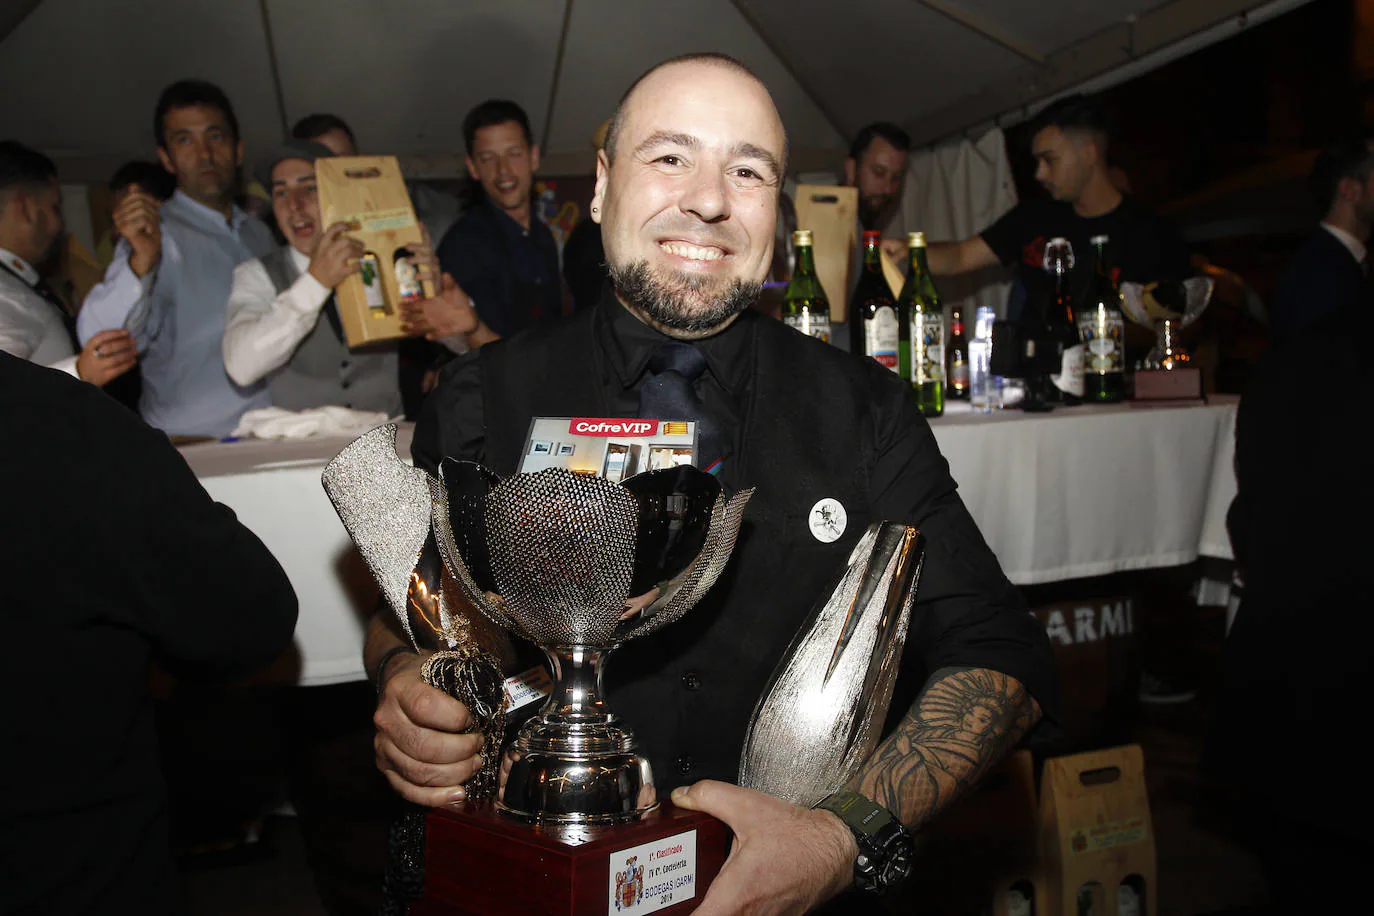 Fotos: El barman del &#039;Olivia&#039;, Mario Alberto López, gana el Nacional de Coctelería con Vermut Igarmi